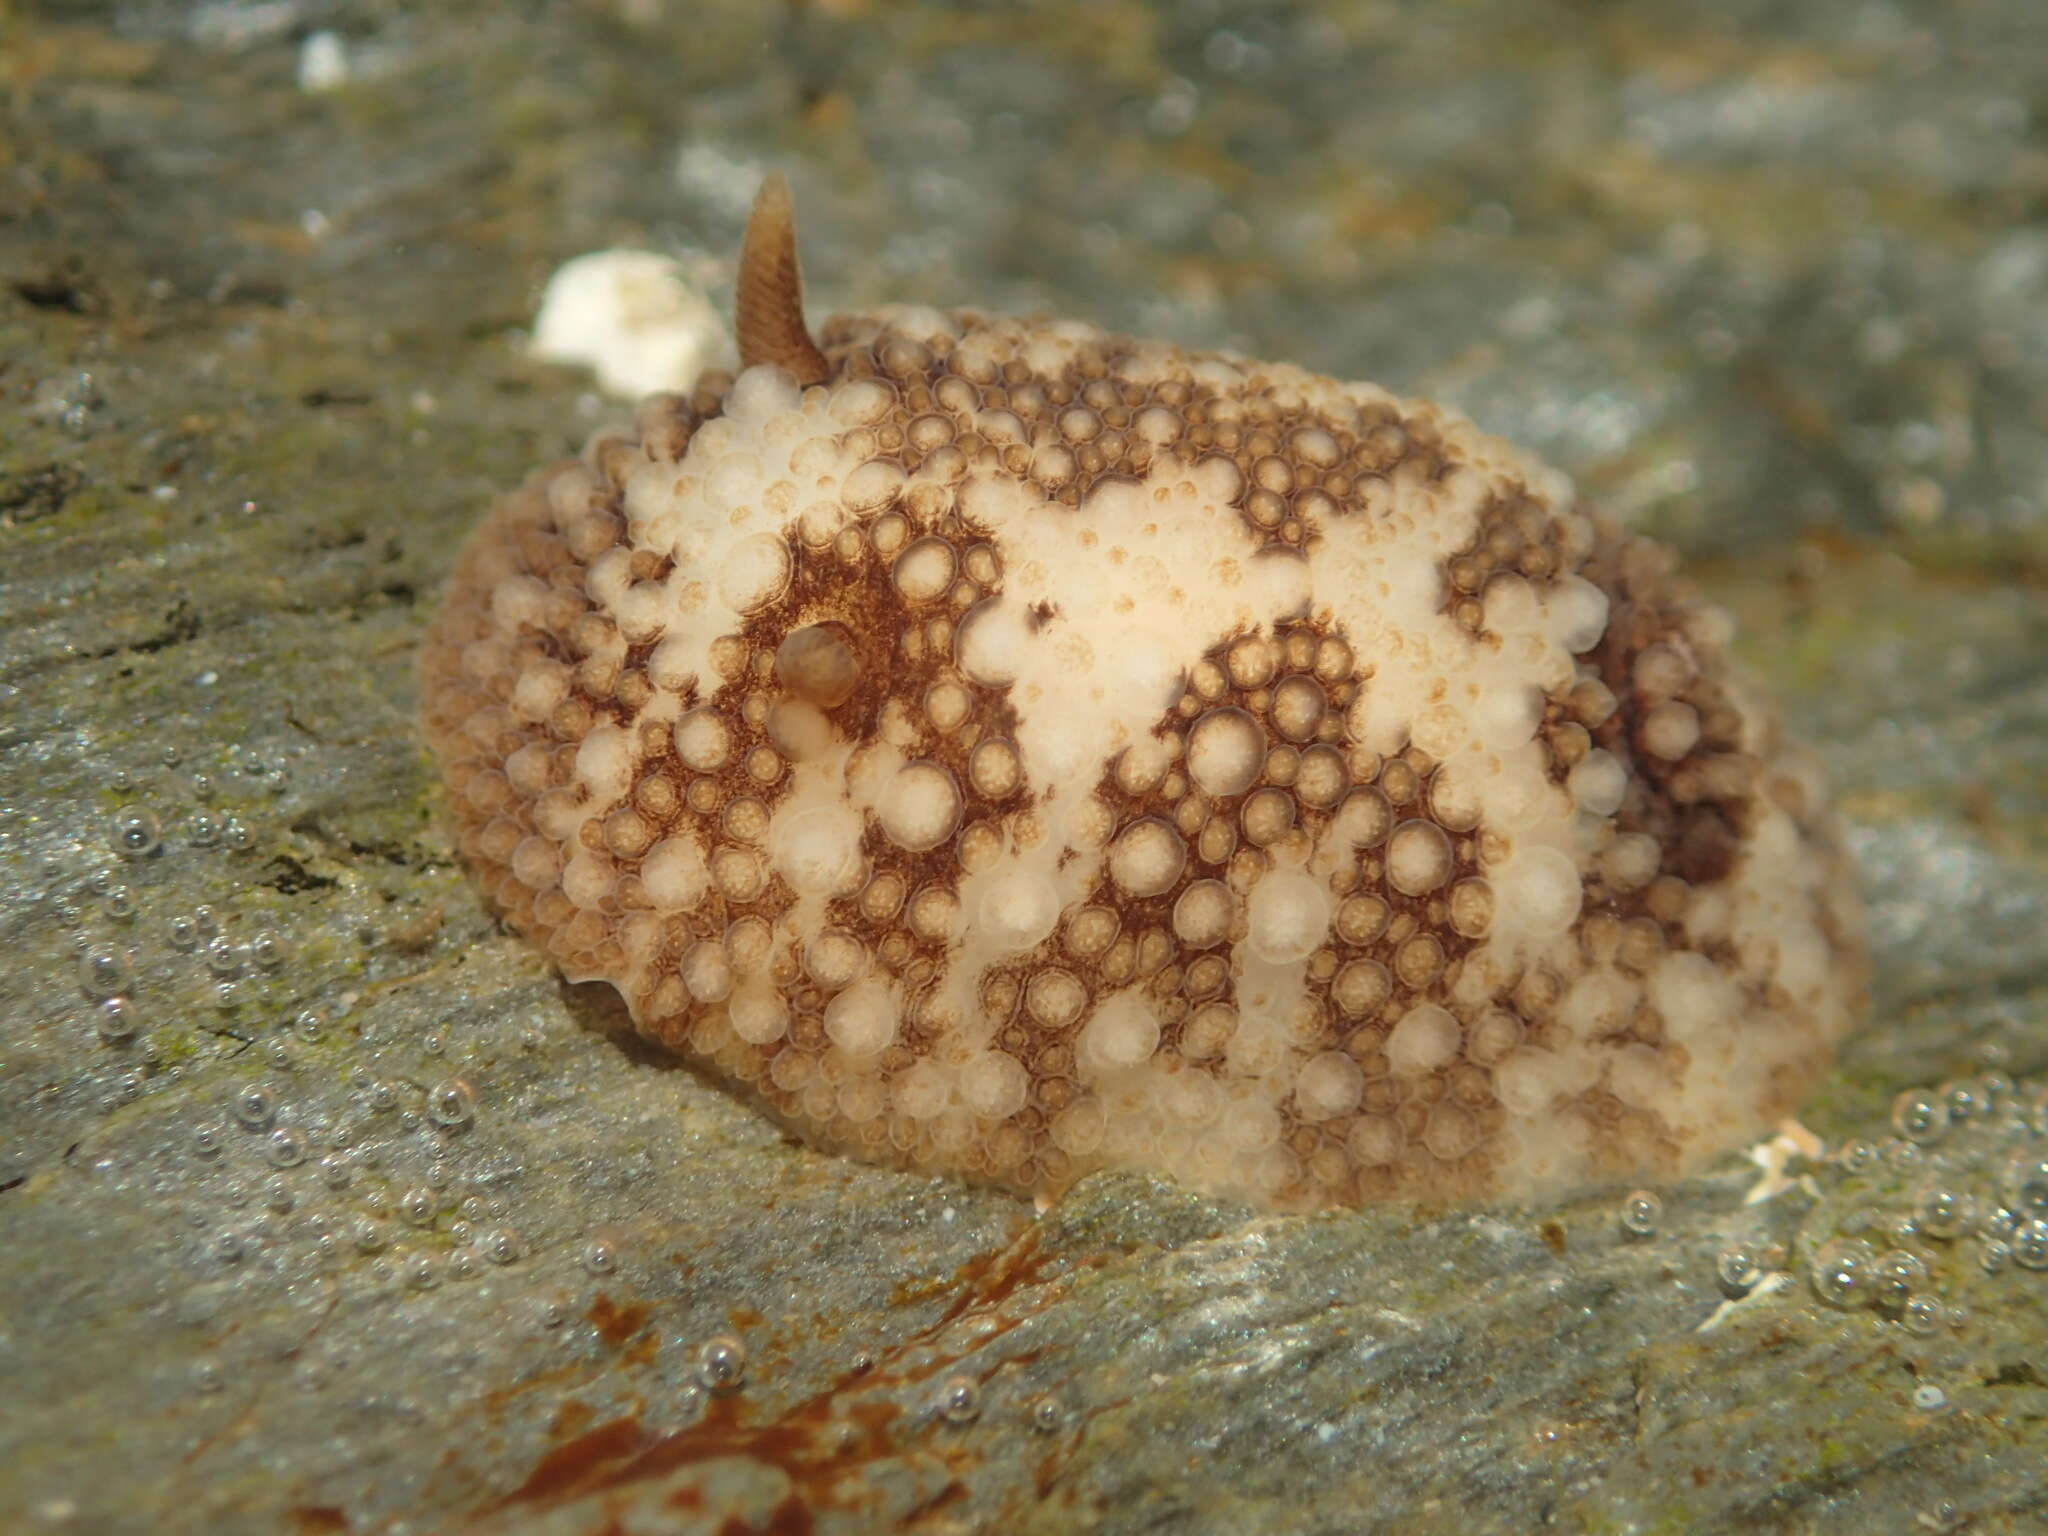 Image of barnacle-eating onchidoris